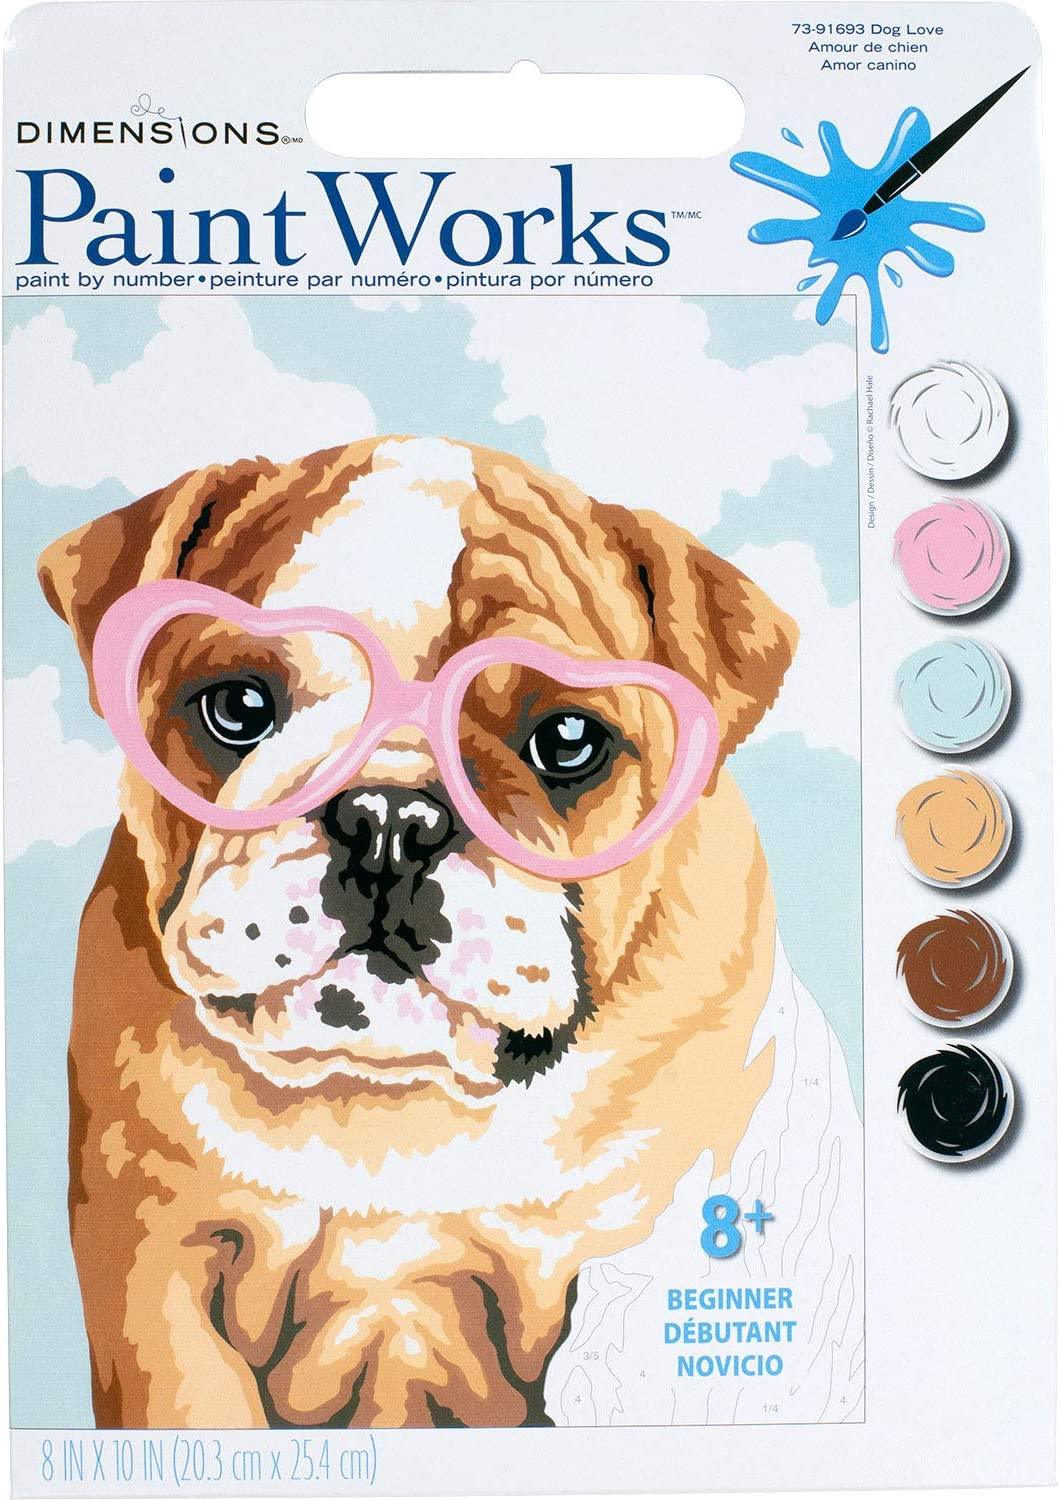 DOG LOVE, kit de pintura por número, DIMENSIONS PAINTWORKS (73-91693)